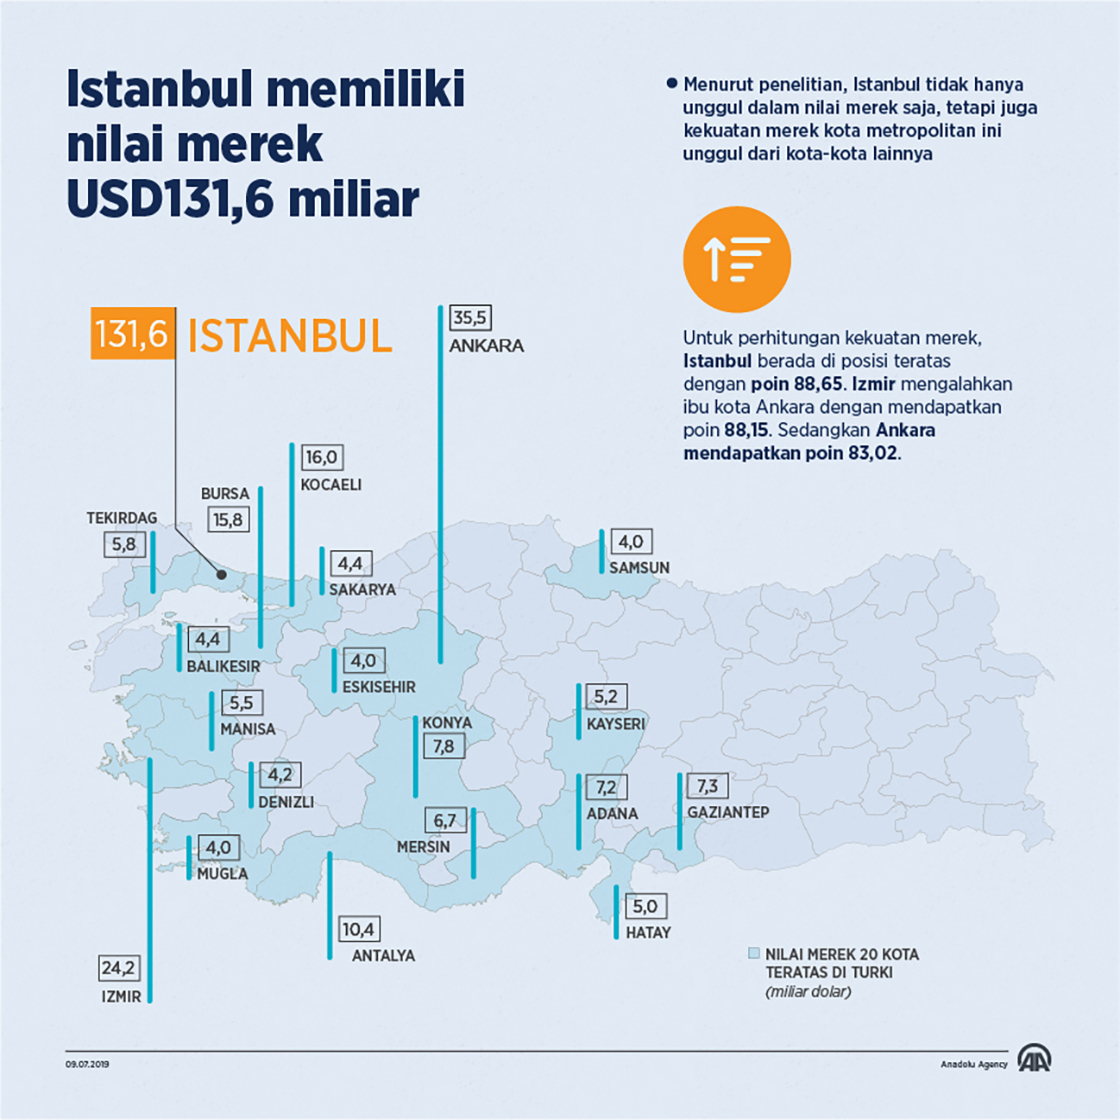 Istanbul memiliki nilai merek USD131,6 miliar